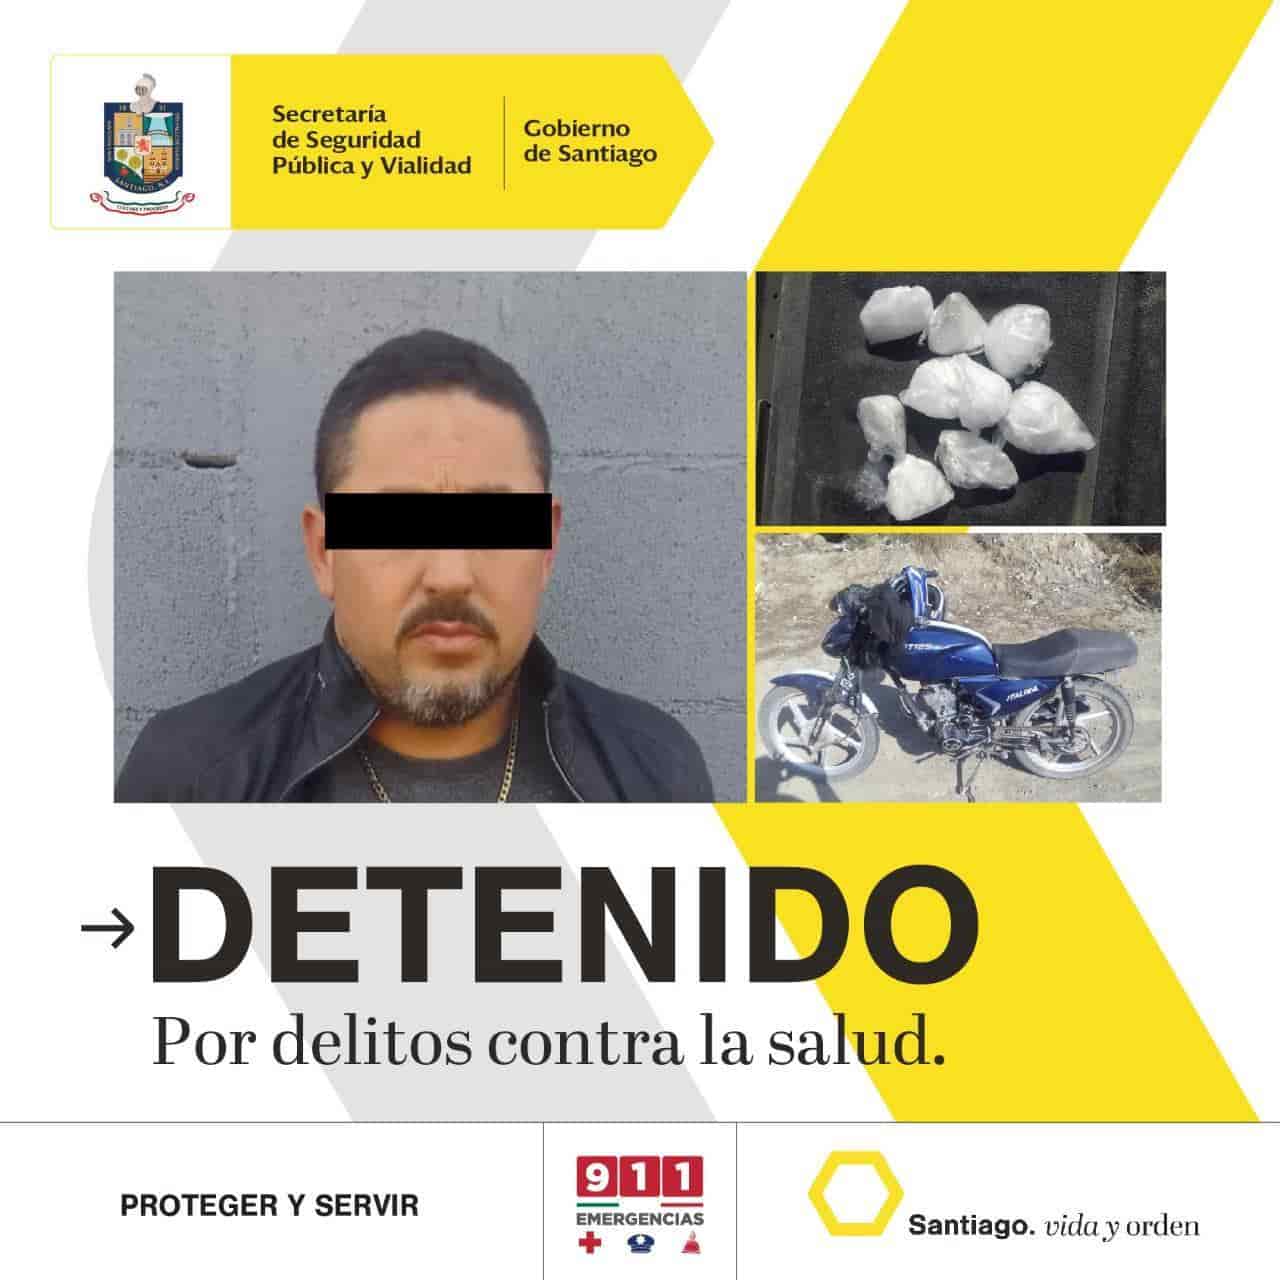 Un presunto vendedor de droga fue detenido por elementos de la policía de Santiago, cuando se desplazaba en una motocicleta sin placas, asegurando nueve envoltorios de la droga conocida como “cristal”.